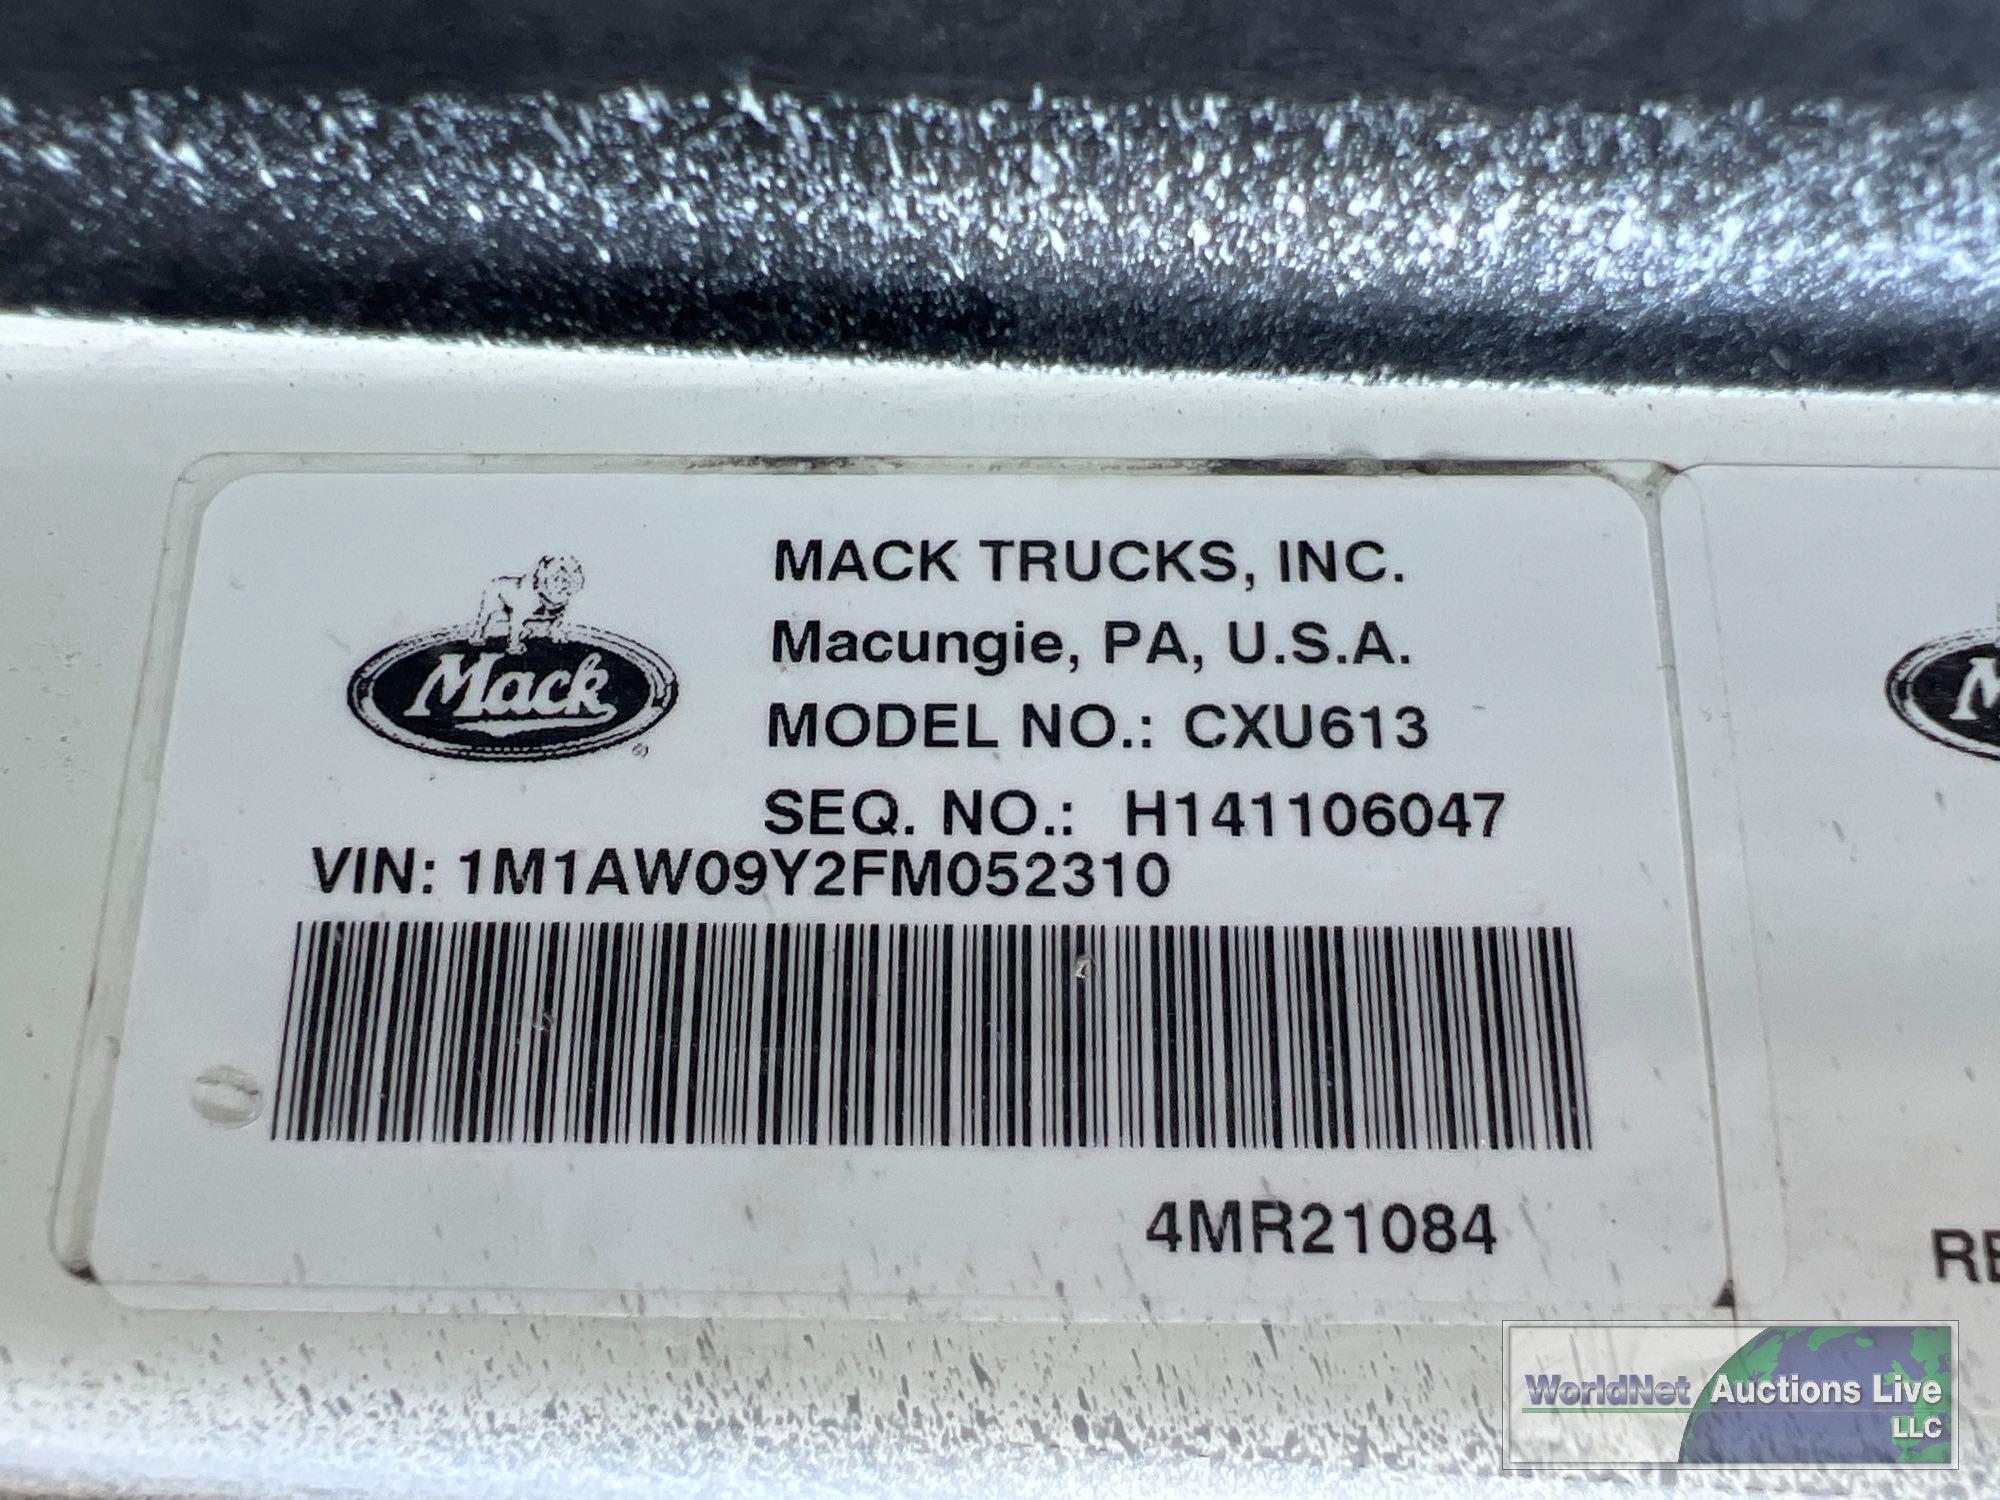 2015 MACK CXU613 DAY CAB ROAD TRACTOR, VIN # 1M1AW09Y2FM052310